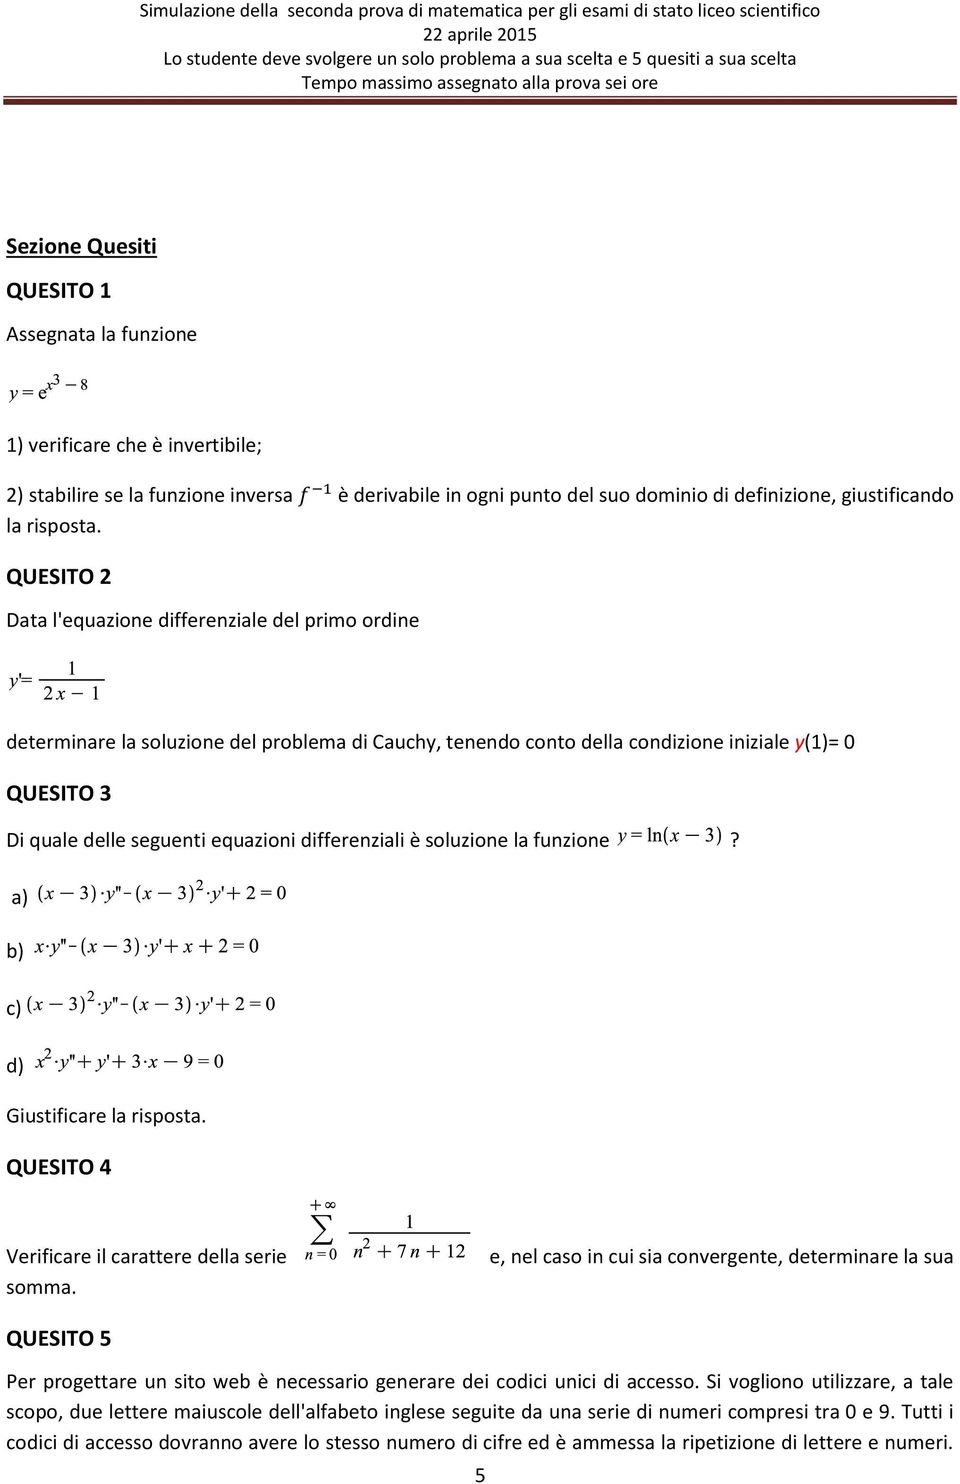 QUESITO 2 Data l'equazione differenziale del primo ordine determinare la soluzione del problema di Cauchy, tenendo conto della condizione iniziale y(1)= 0 QUESITO 3 Di quale delle seguenti equazioni